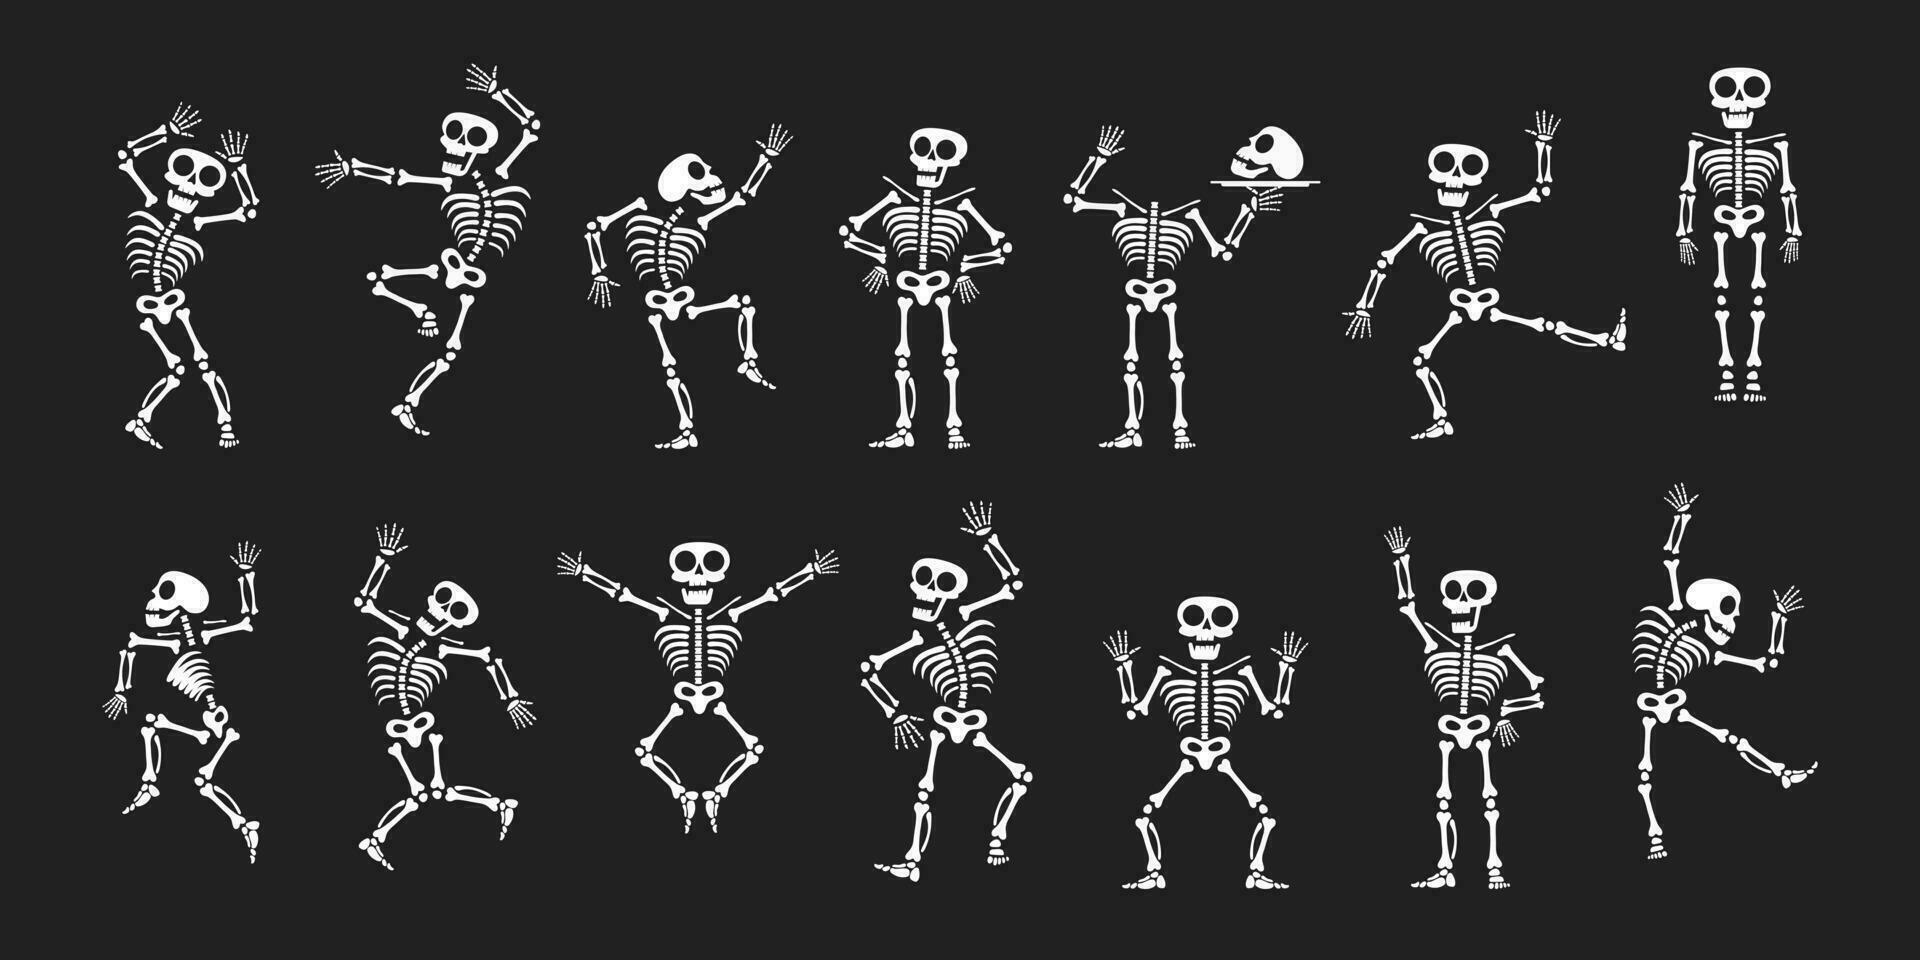 skeletten dansen met verschillend standen vlak stijl ontwerp vector illustratie set.